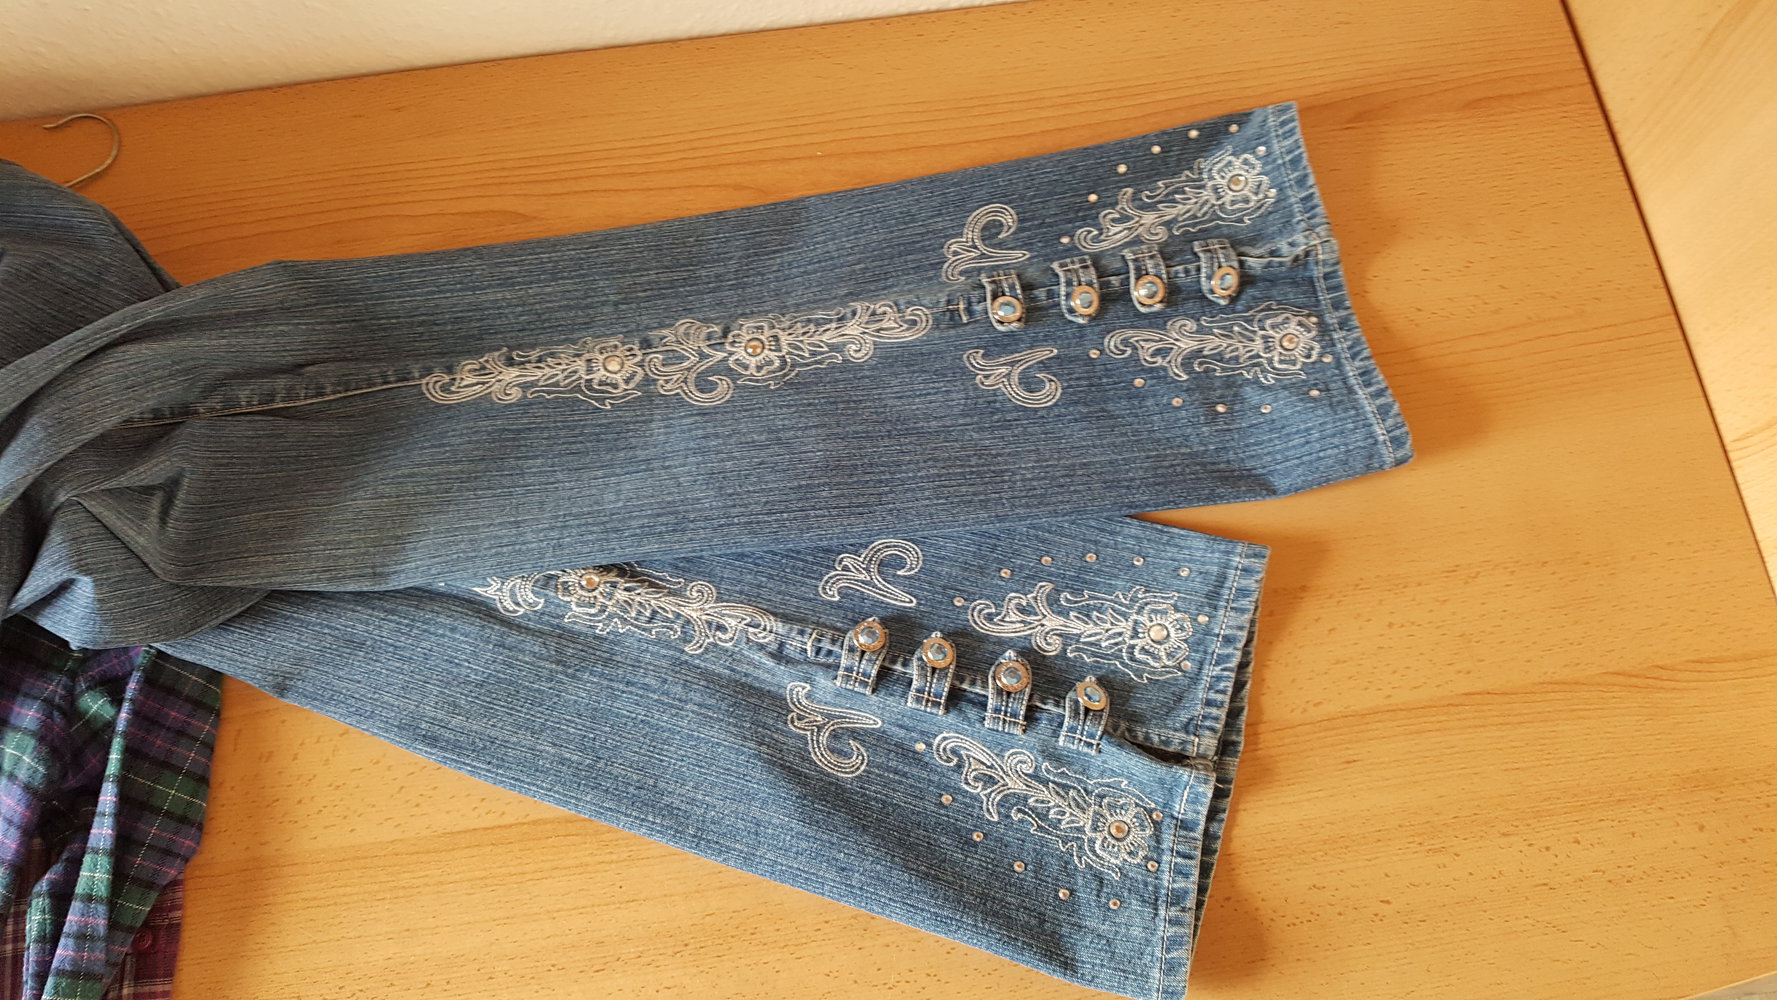 455. Retro-Schlag-Jeans mit Stickerei, Strasssteinchen und Schmuckknöpfen, Gr. 38